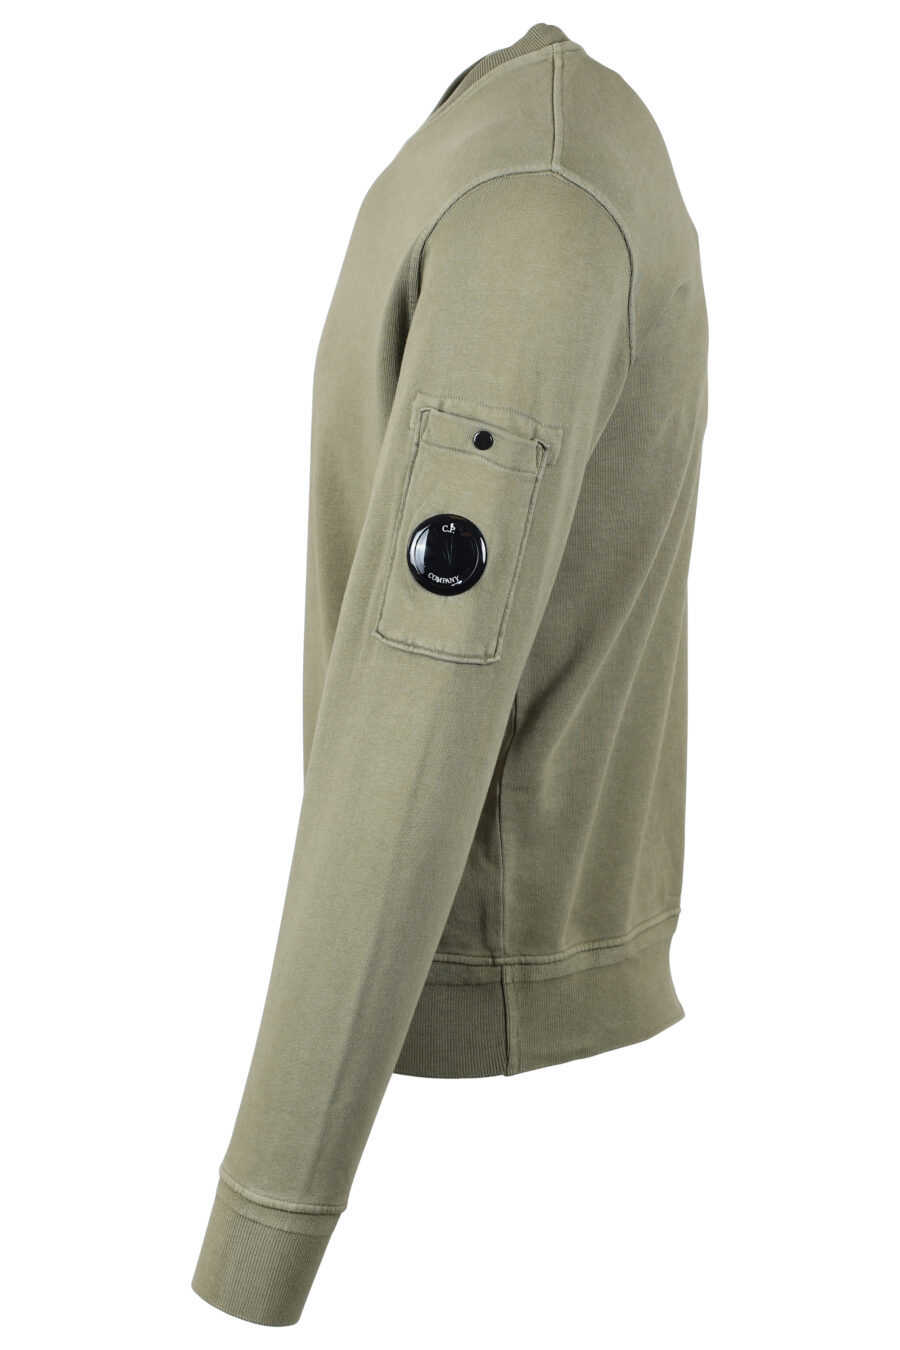 Sweat-shirt vert militaire avec doublure en polaire et mini logo circulaire - IMG 4673